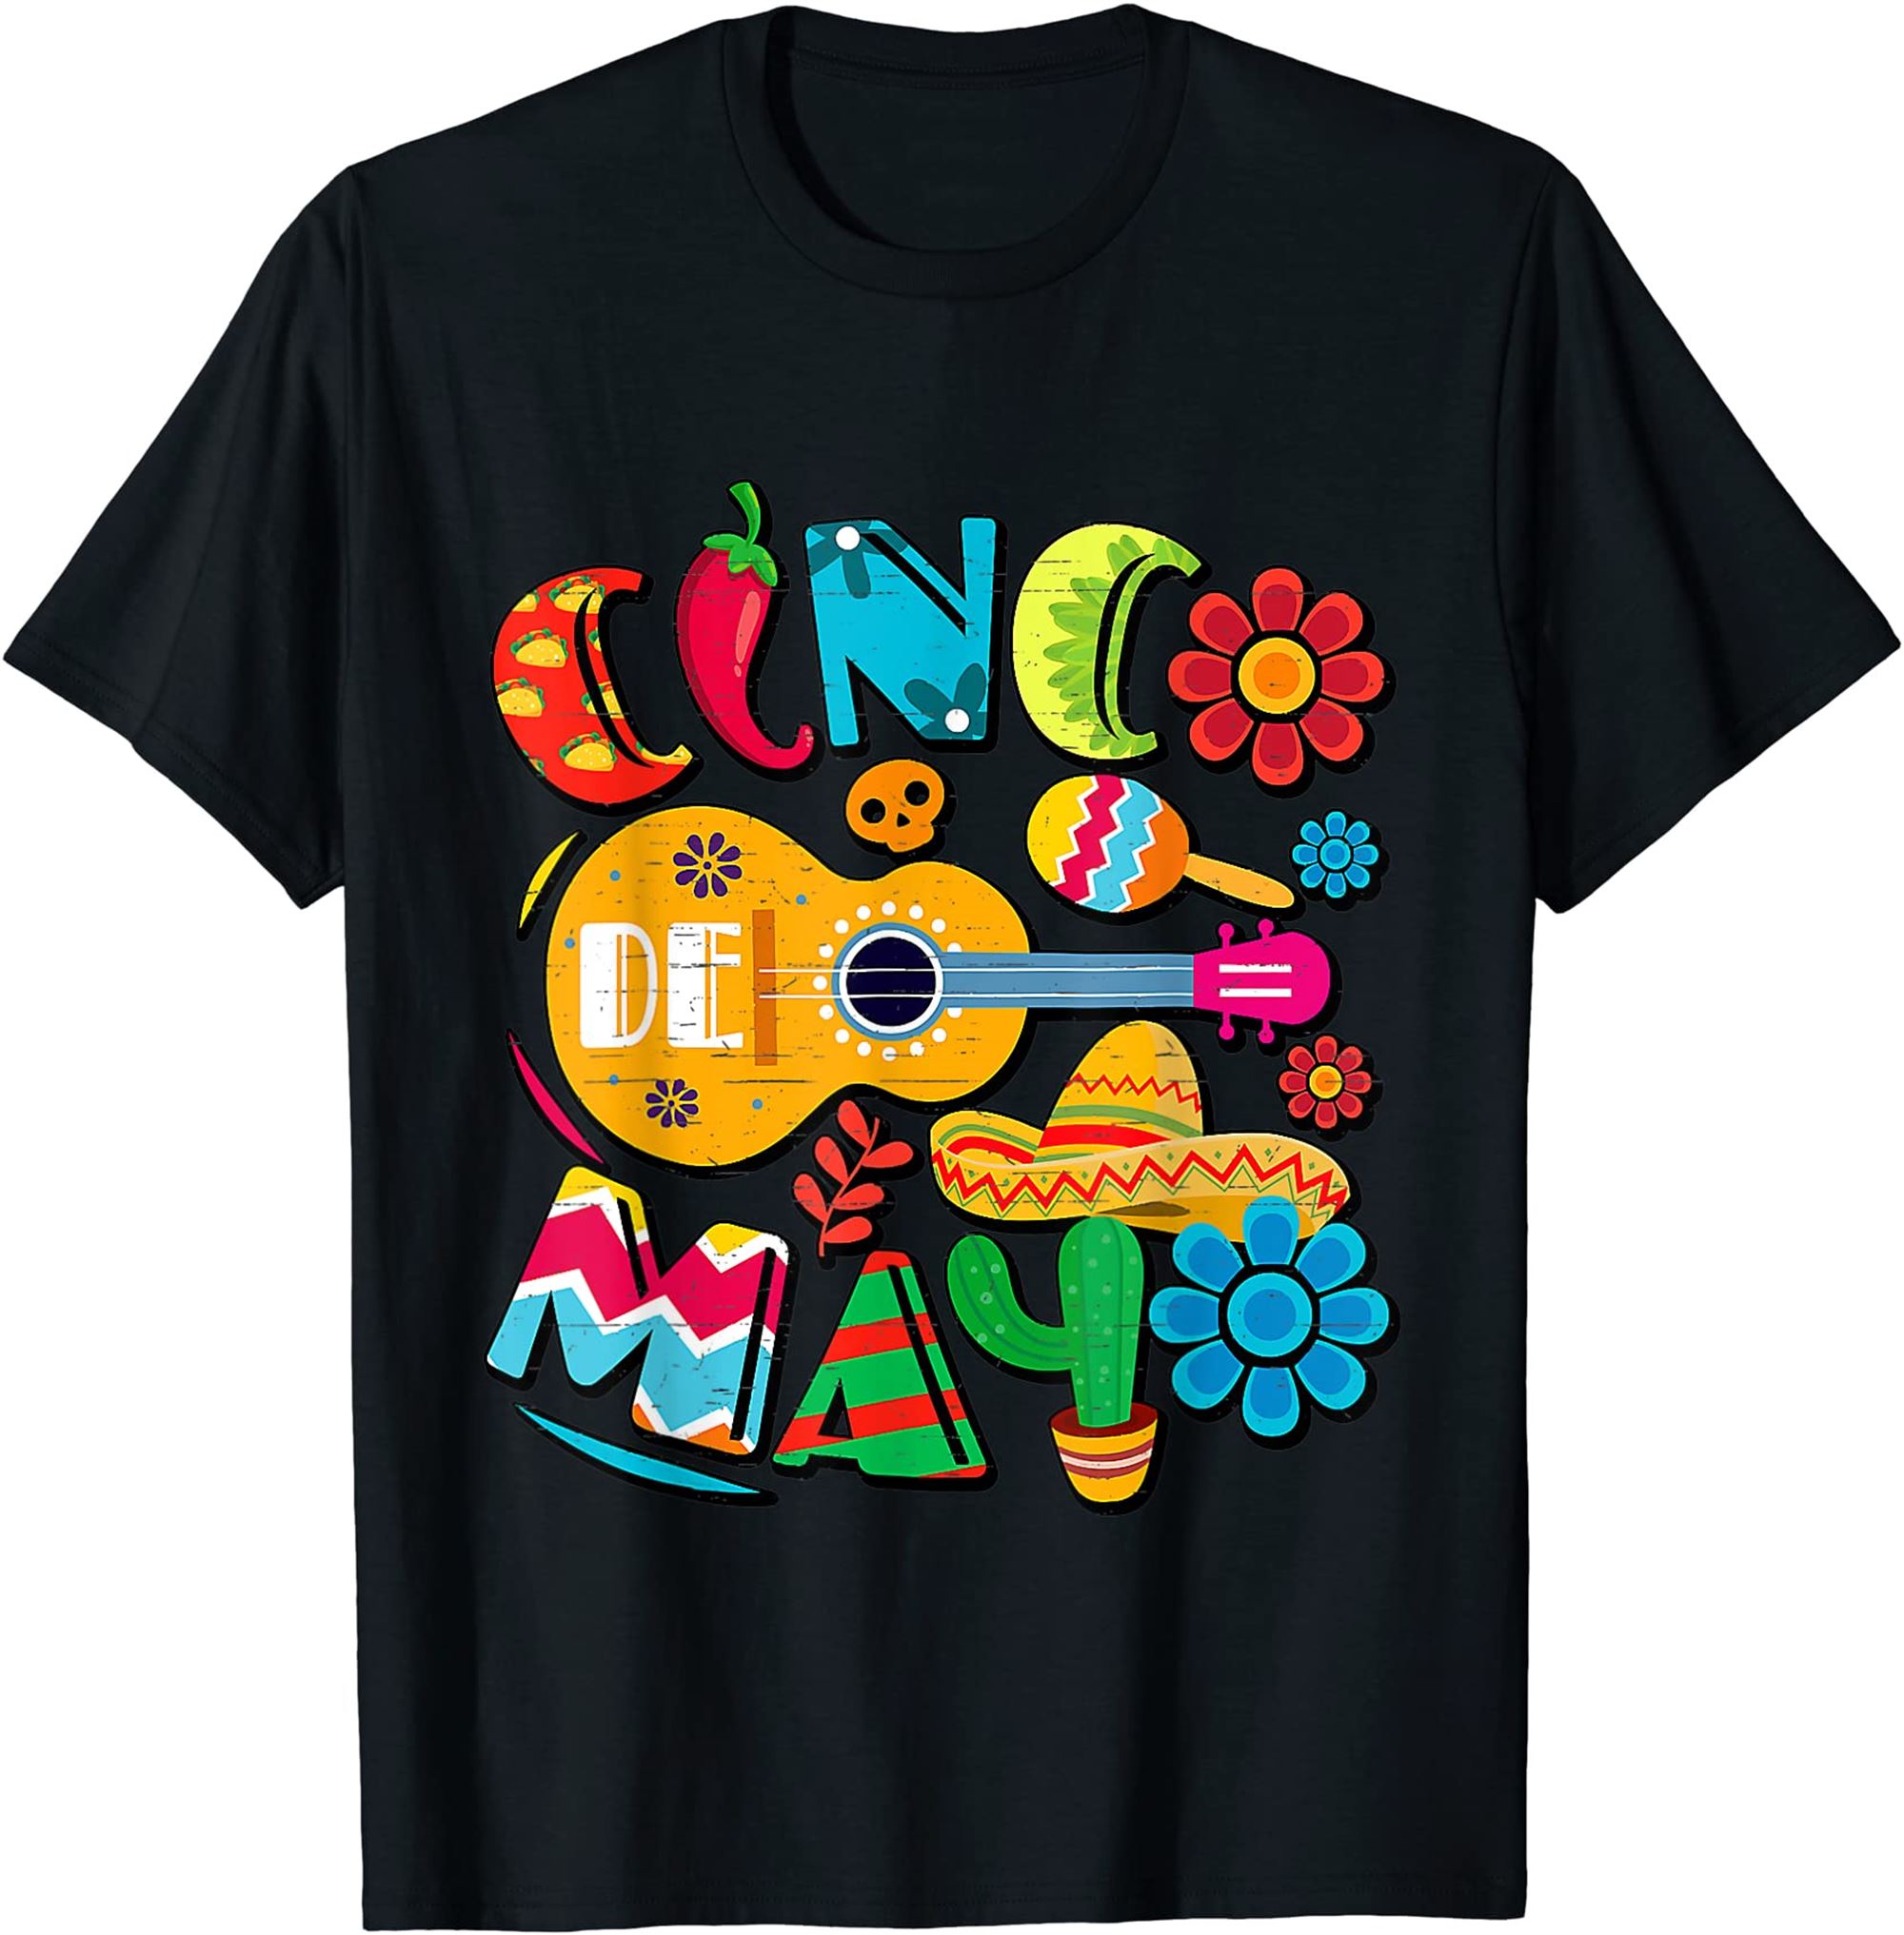 Cinco De Mayo Mexican Fiesta 5 De Mayo T-shirt Full Size Up To 5xl